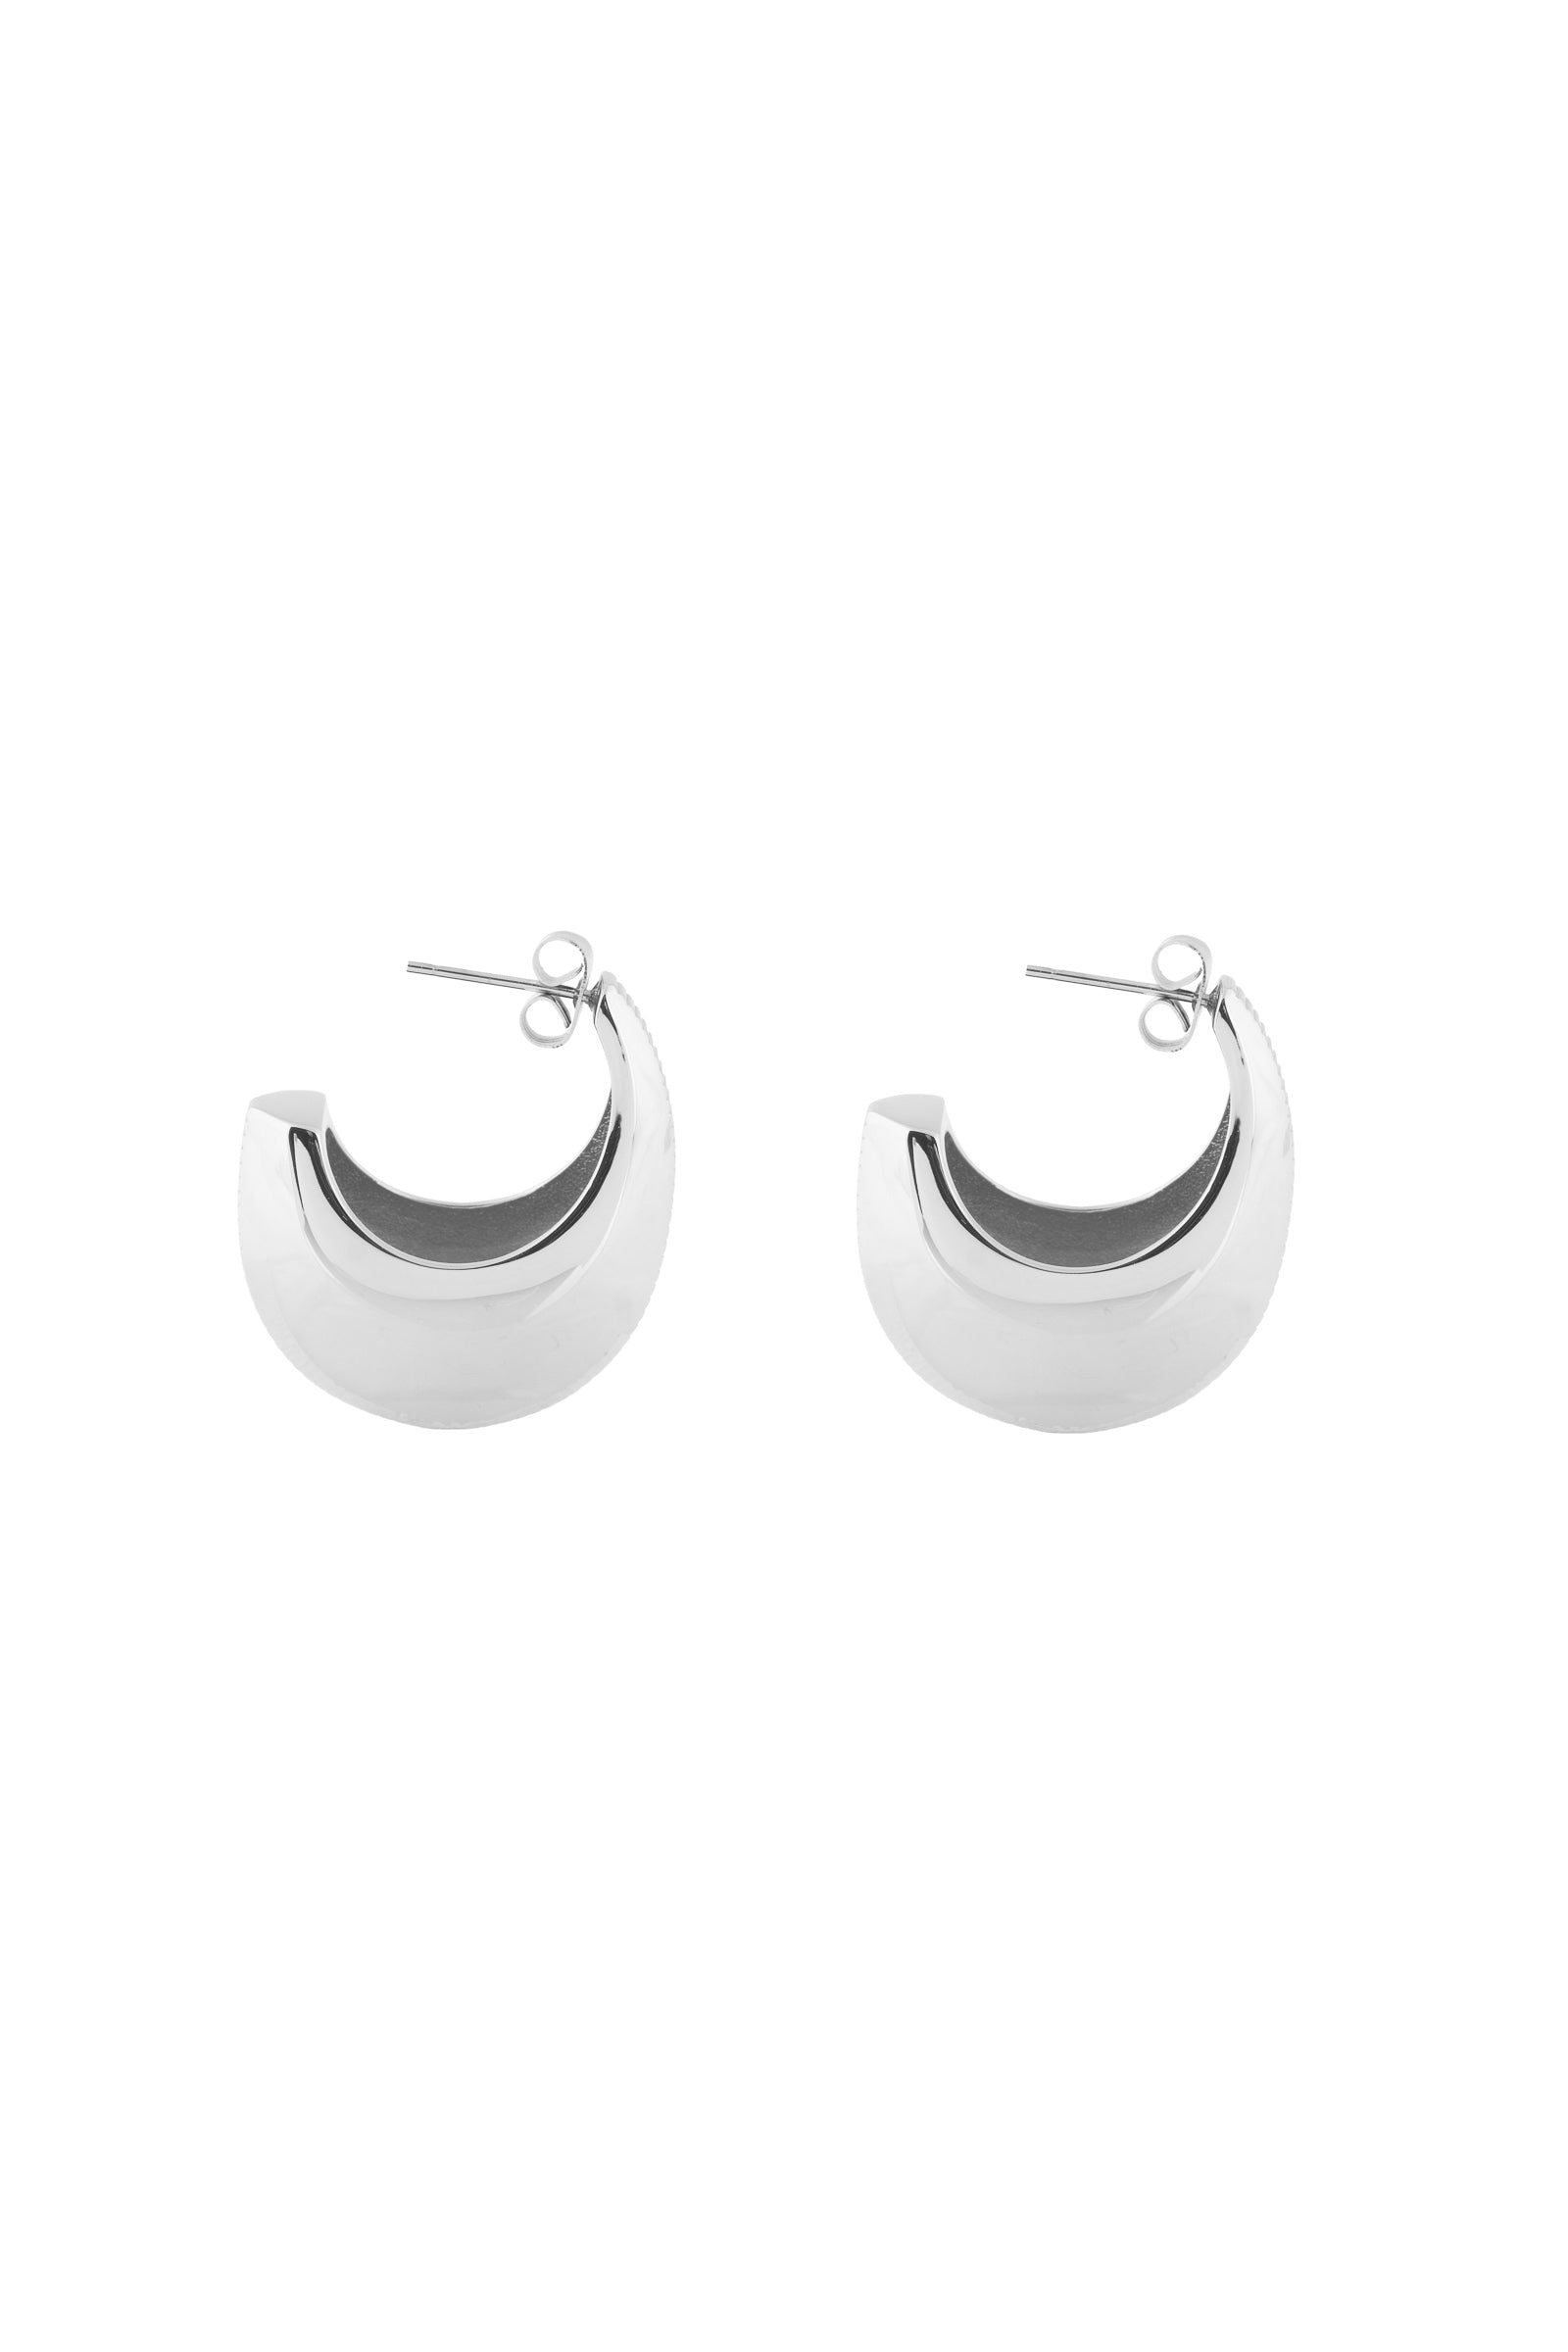 Bandhu Ribble Earrings - Silver - RUM Amsterdam